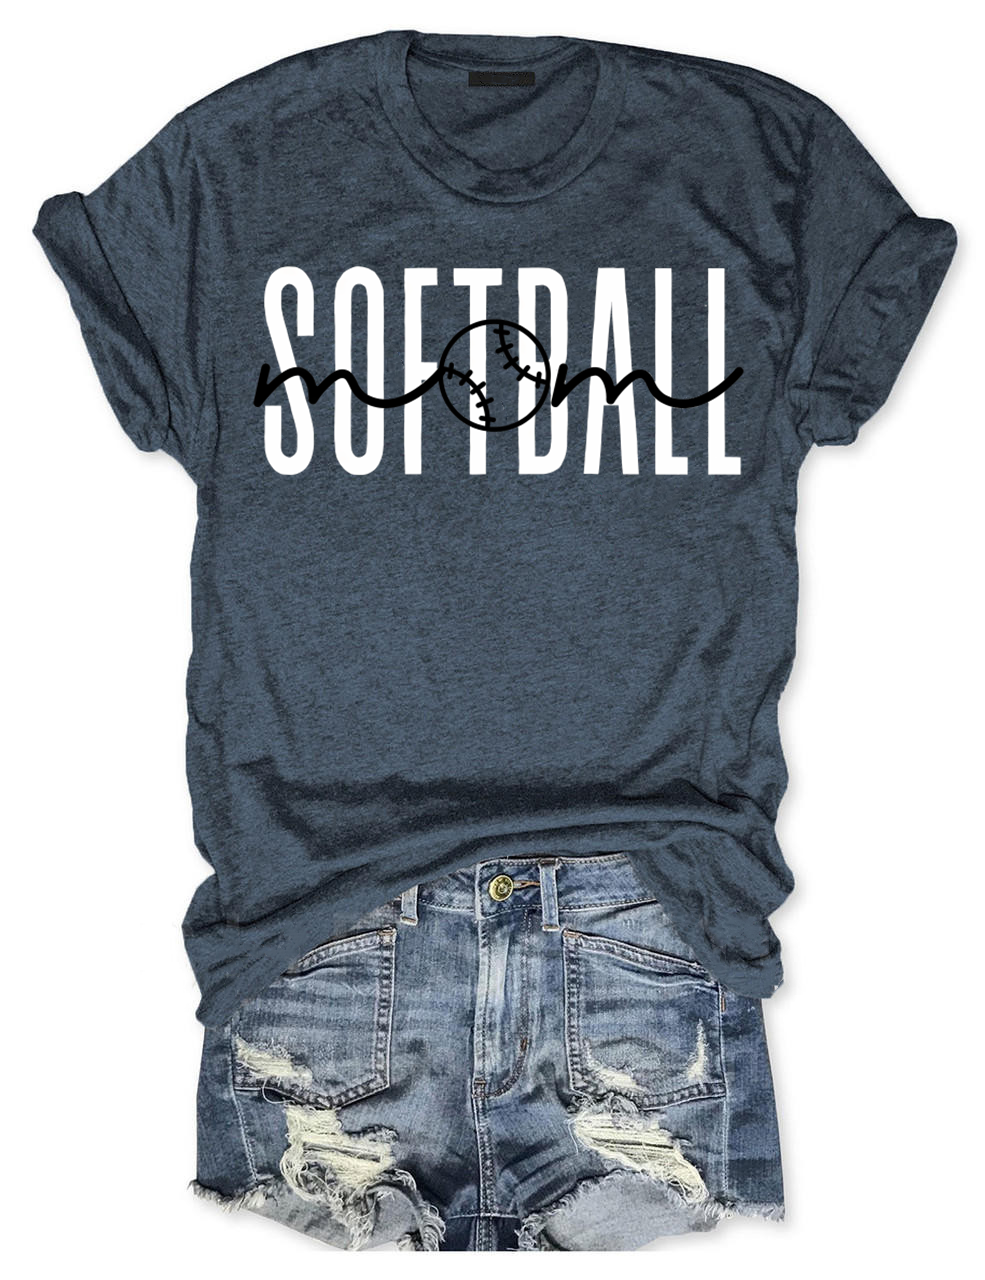 Softball Mom Club T-shirt